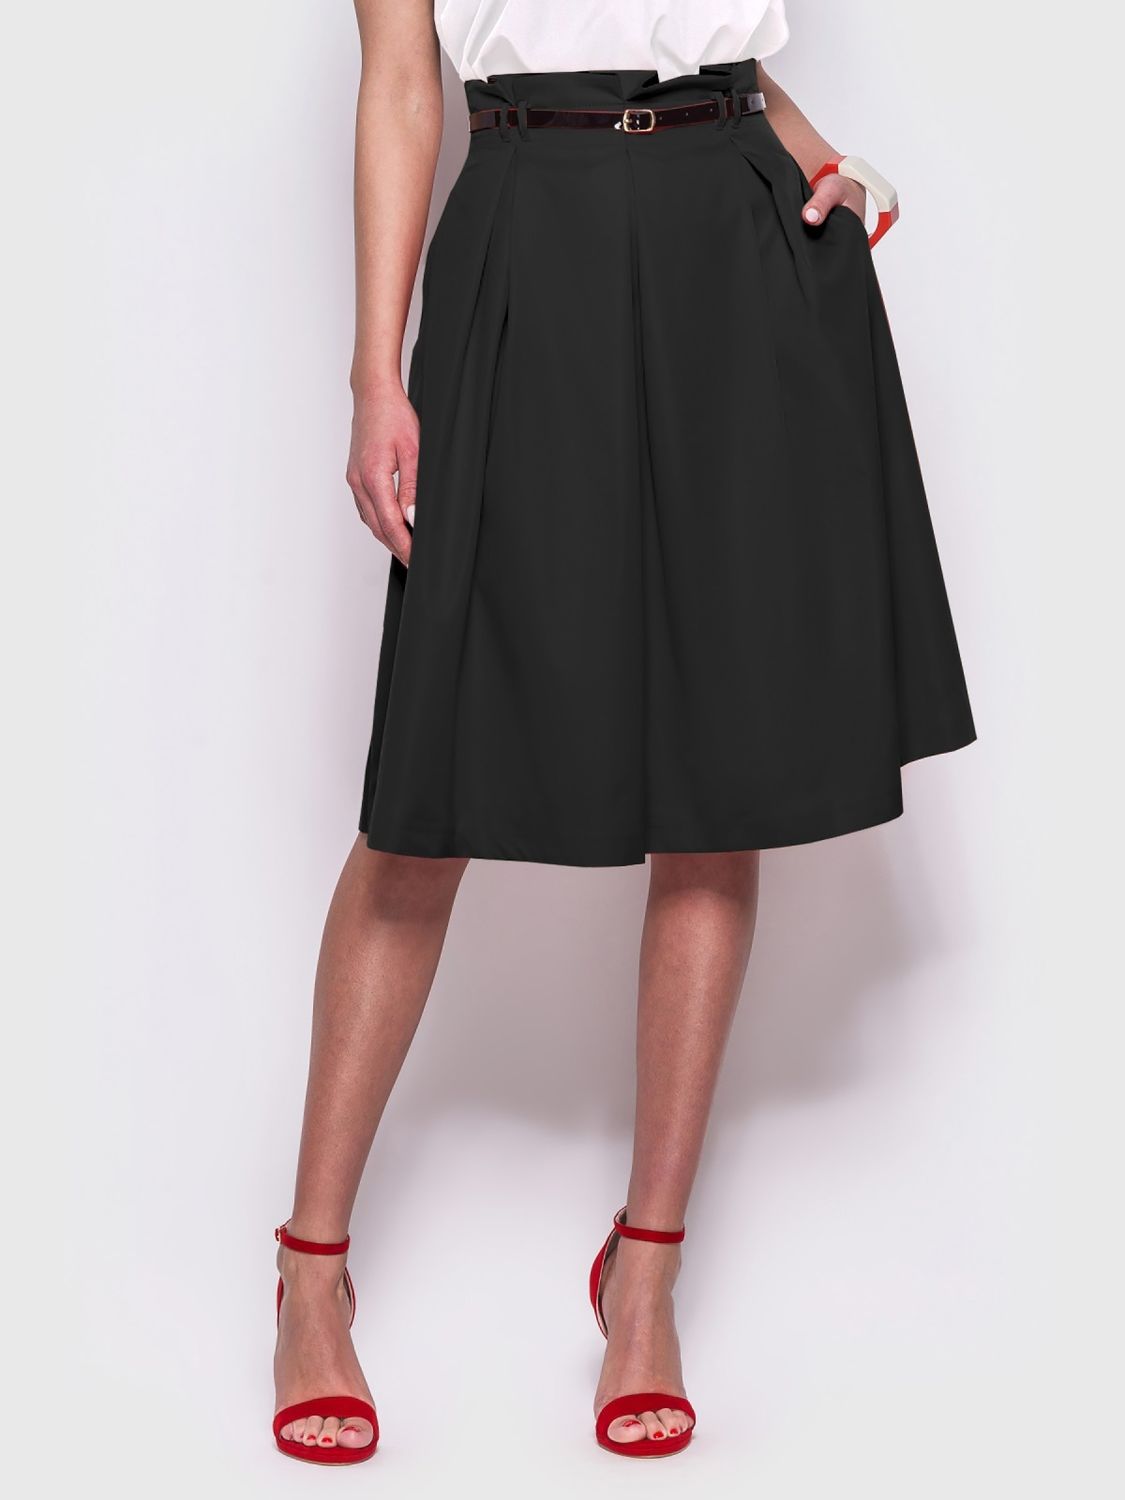 Стильная юбка с высокой посадкой черного цвета - фото